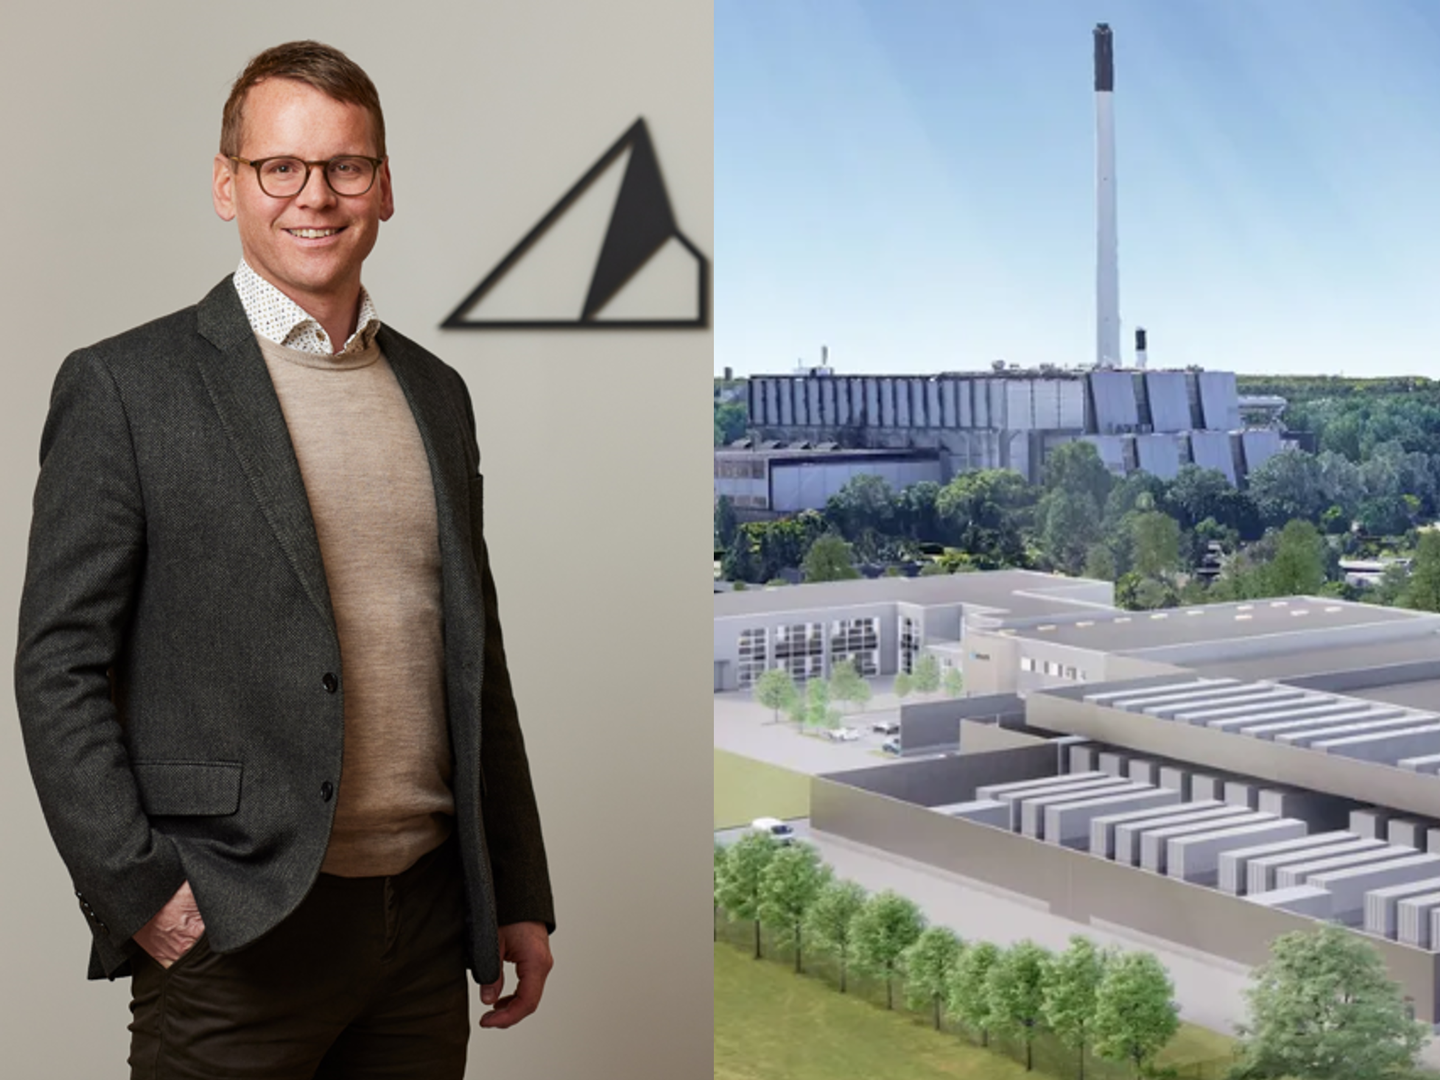 Adm. direktør Eyjólfur Magnús Kristinsson har netop præsenteret planerne om at bygge et co-location datacenter i Ballerup udenfor København. | Foto: PR